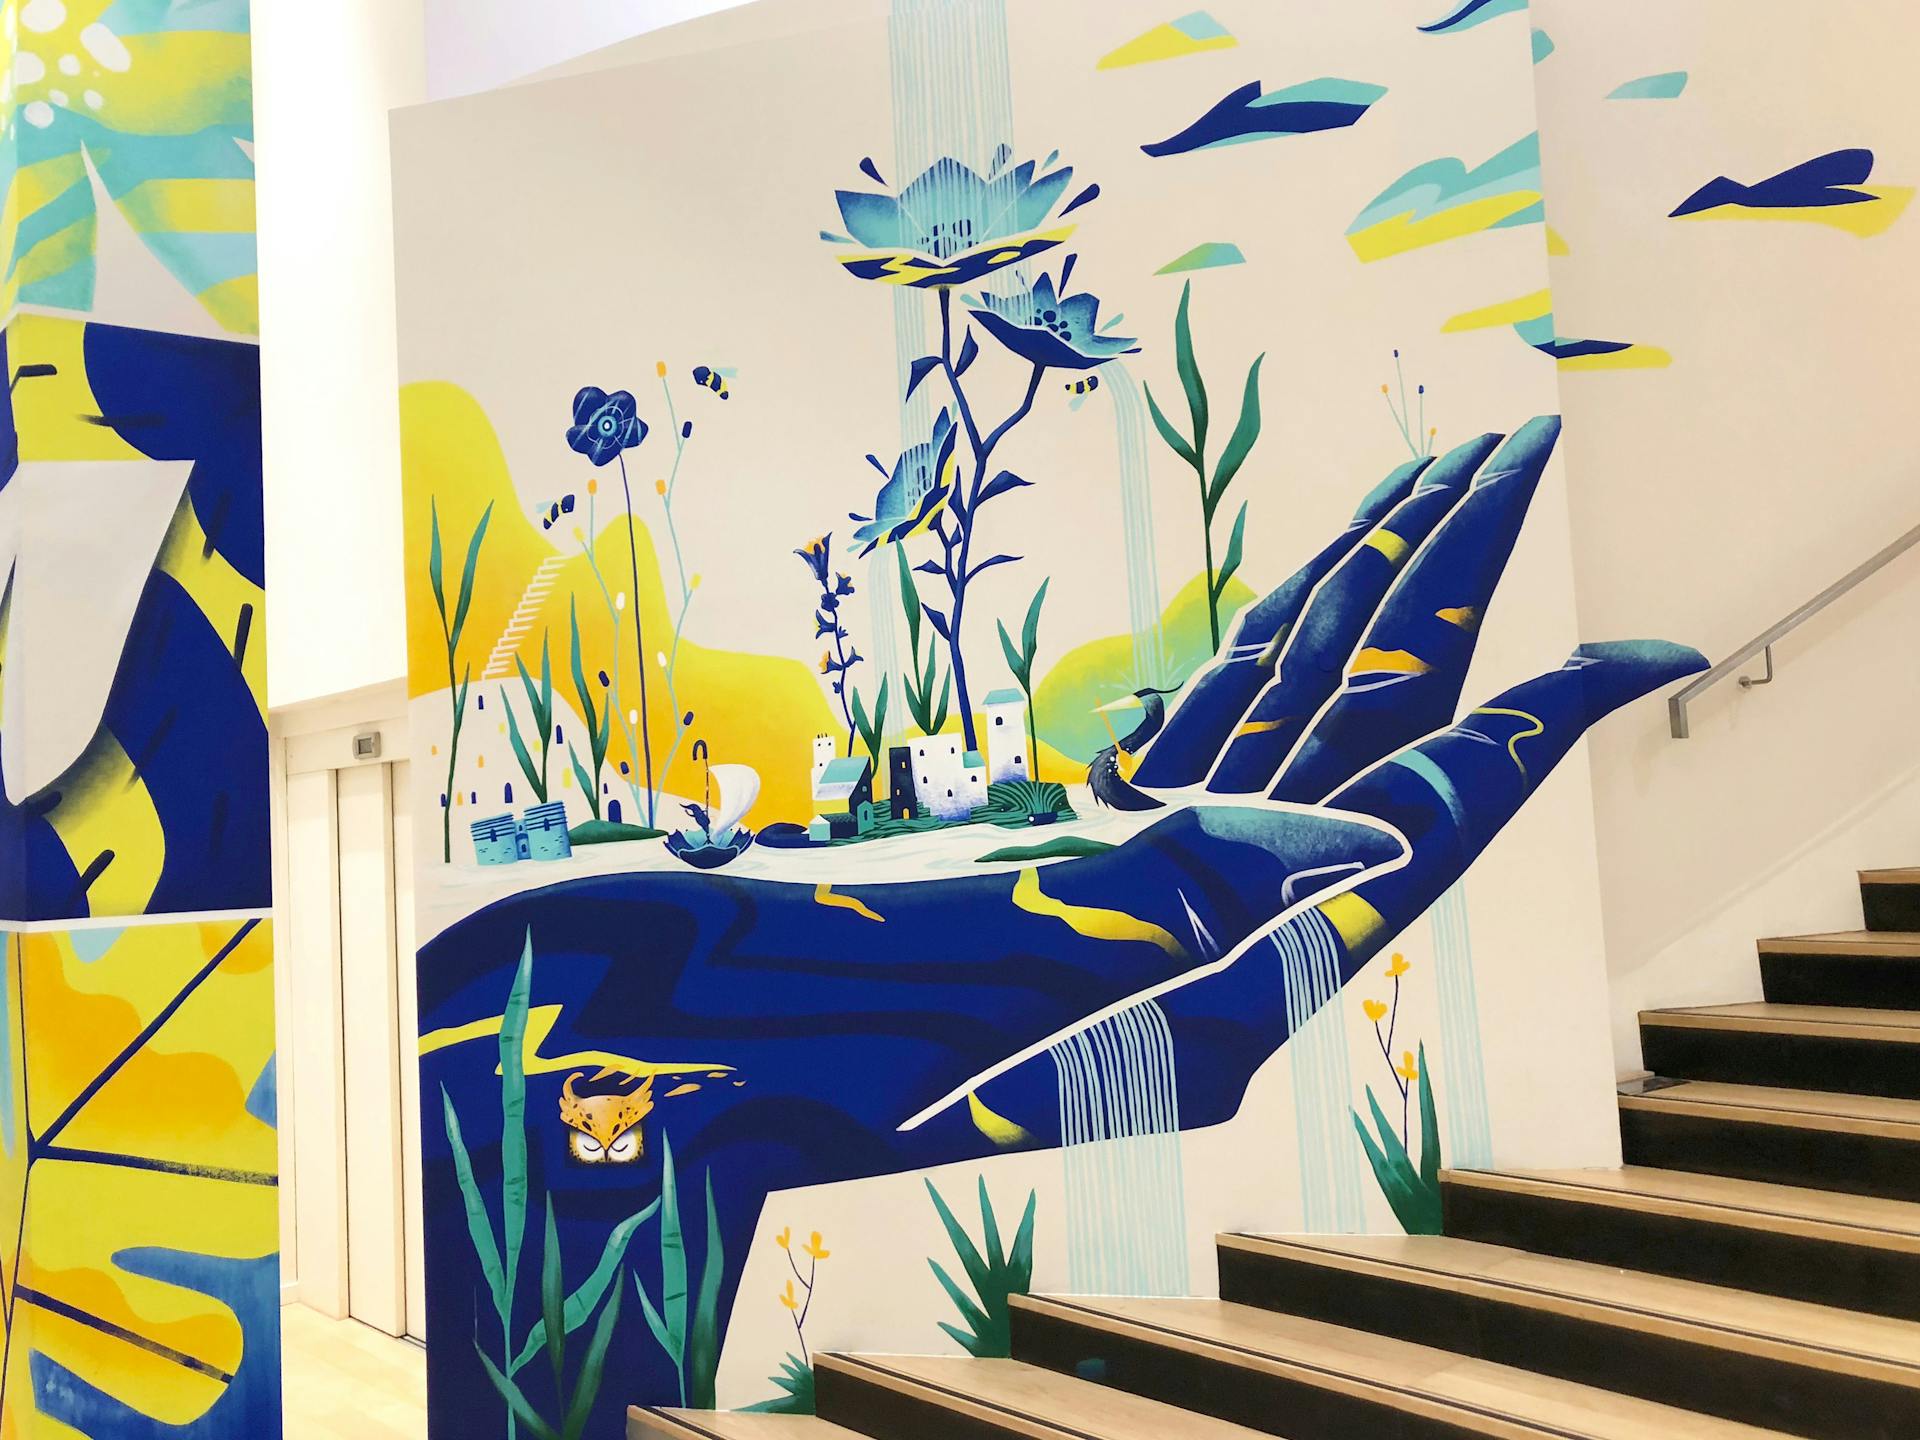 Projet de peinture mural au sein d'une Biocoop à Angers. Représentation de la faune et e la flore au creux d'une main.